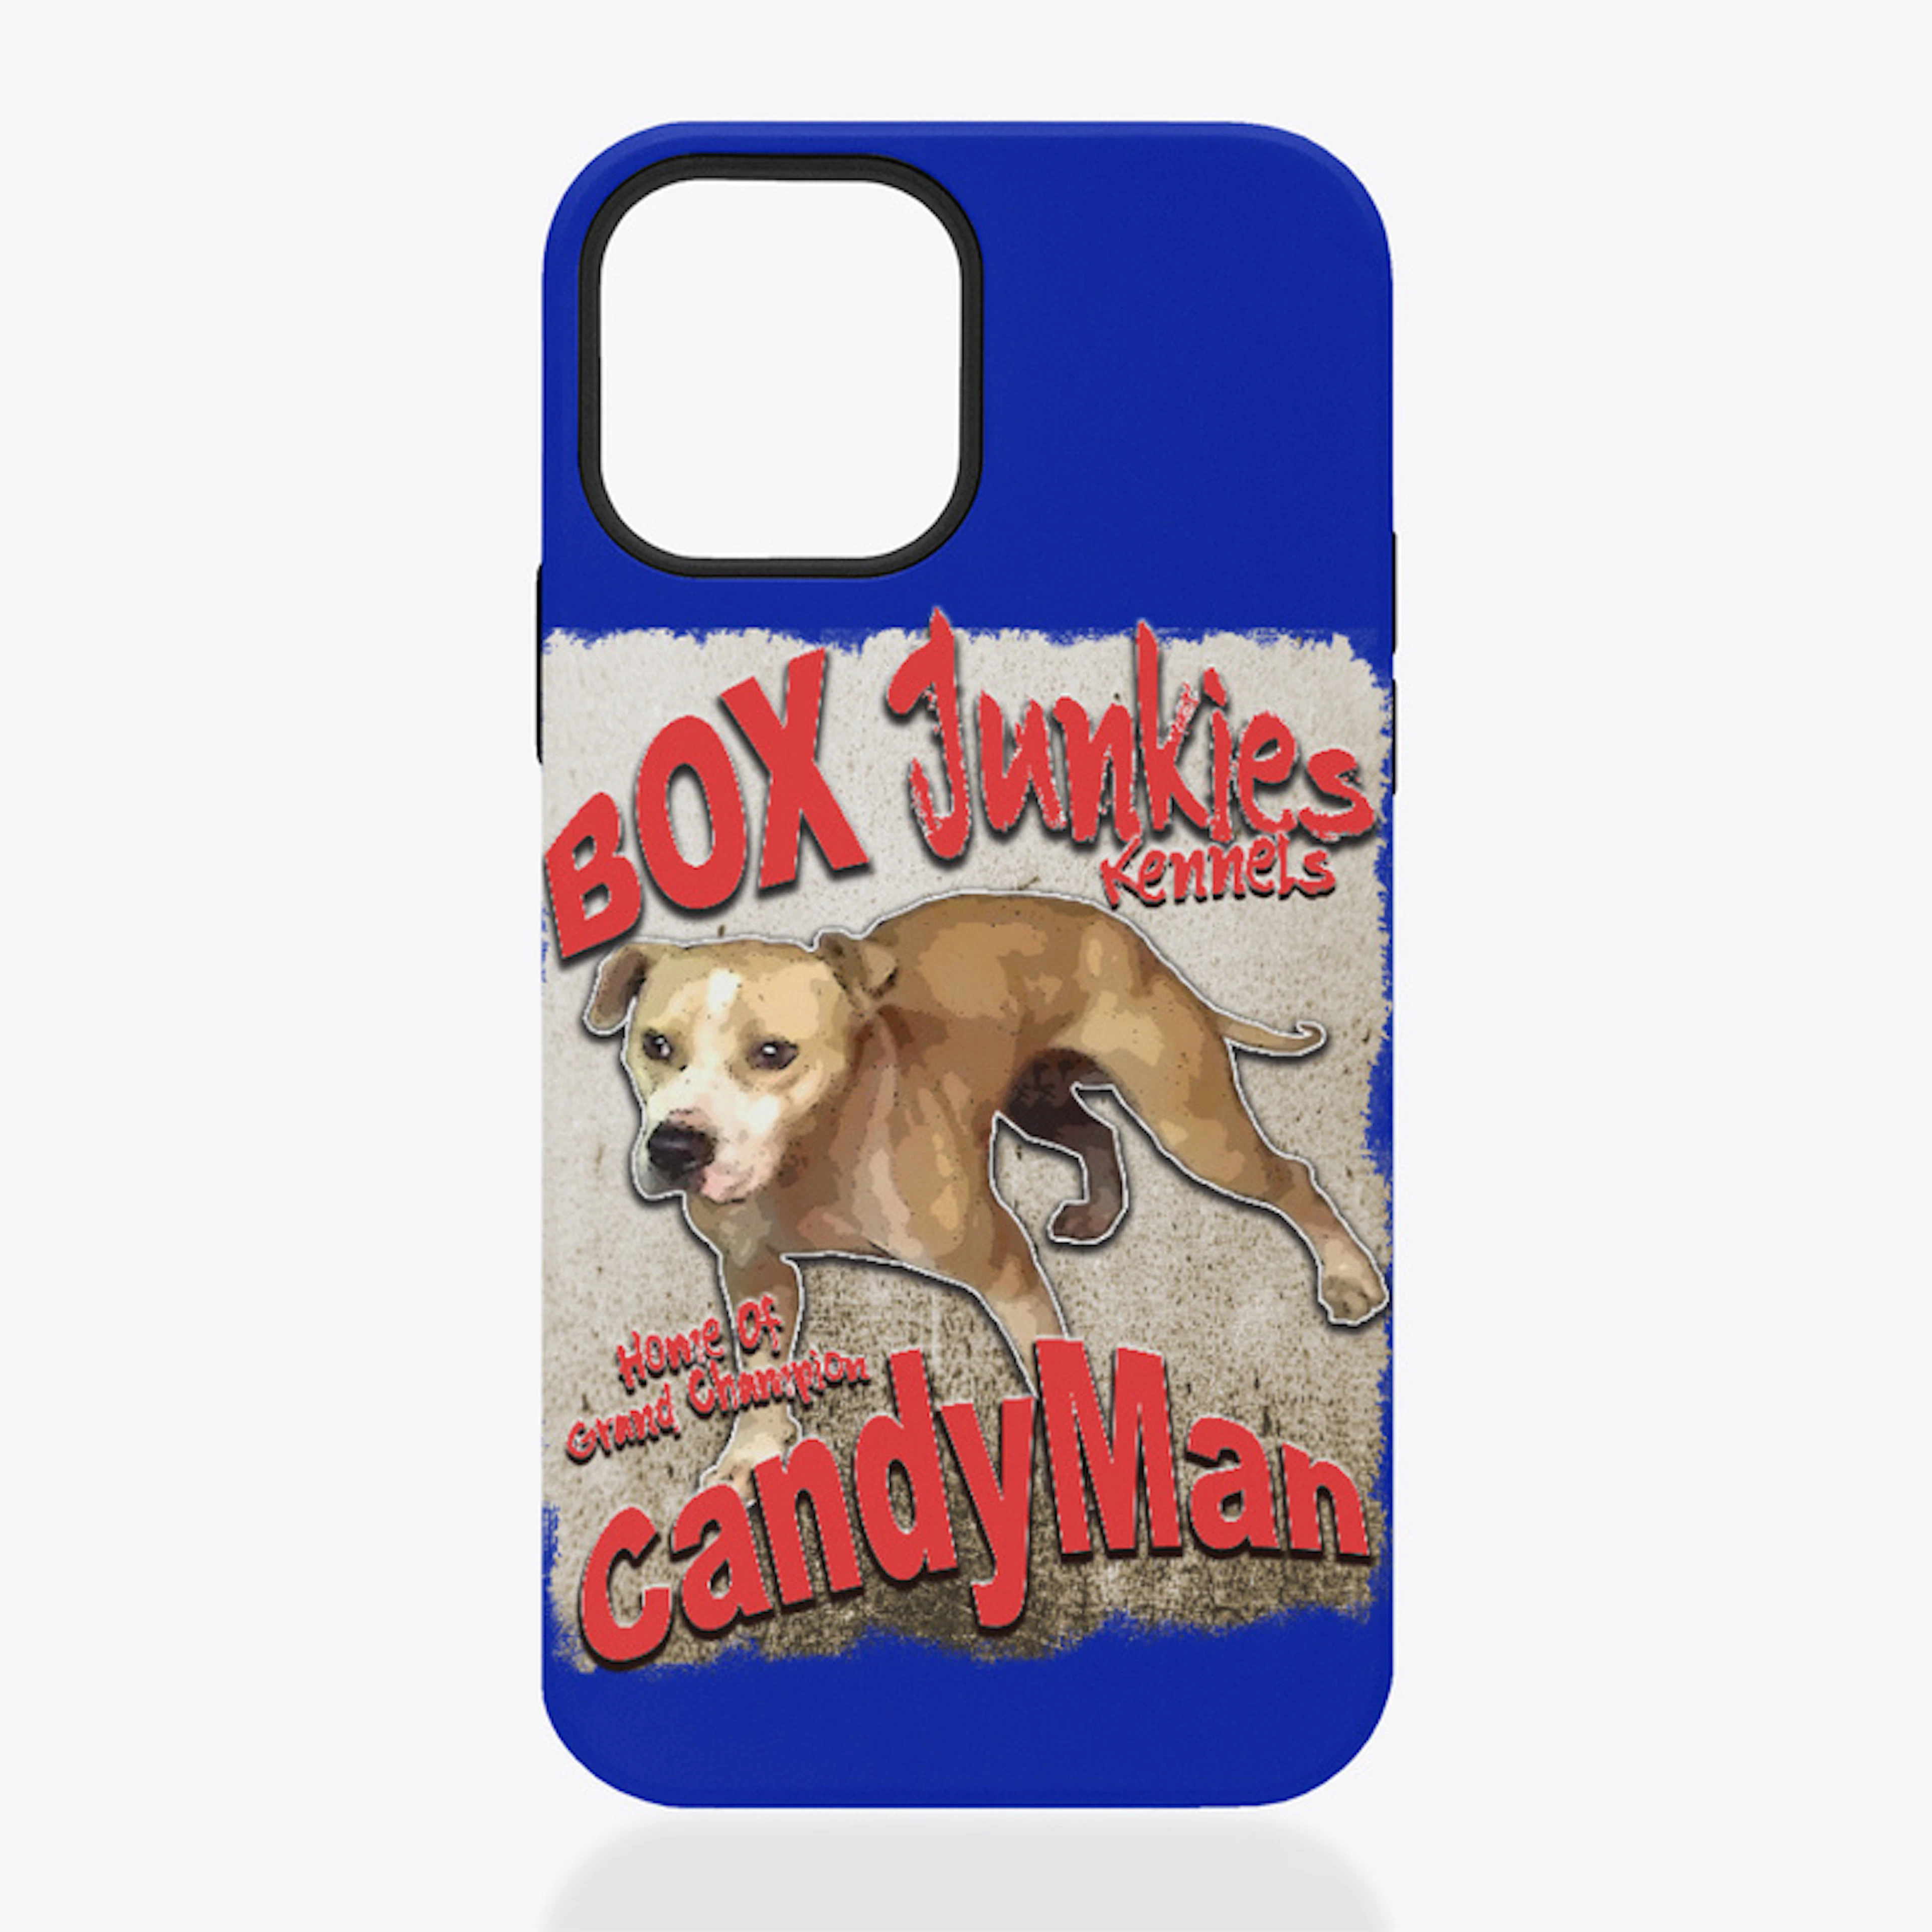 Gr Ch Candyman iphone case